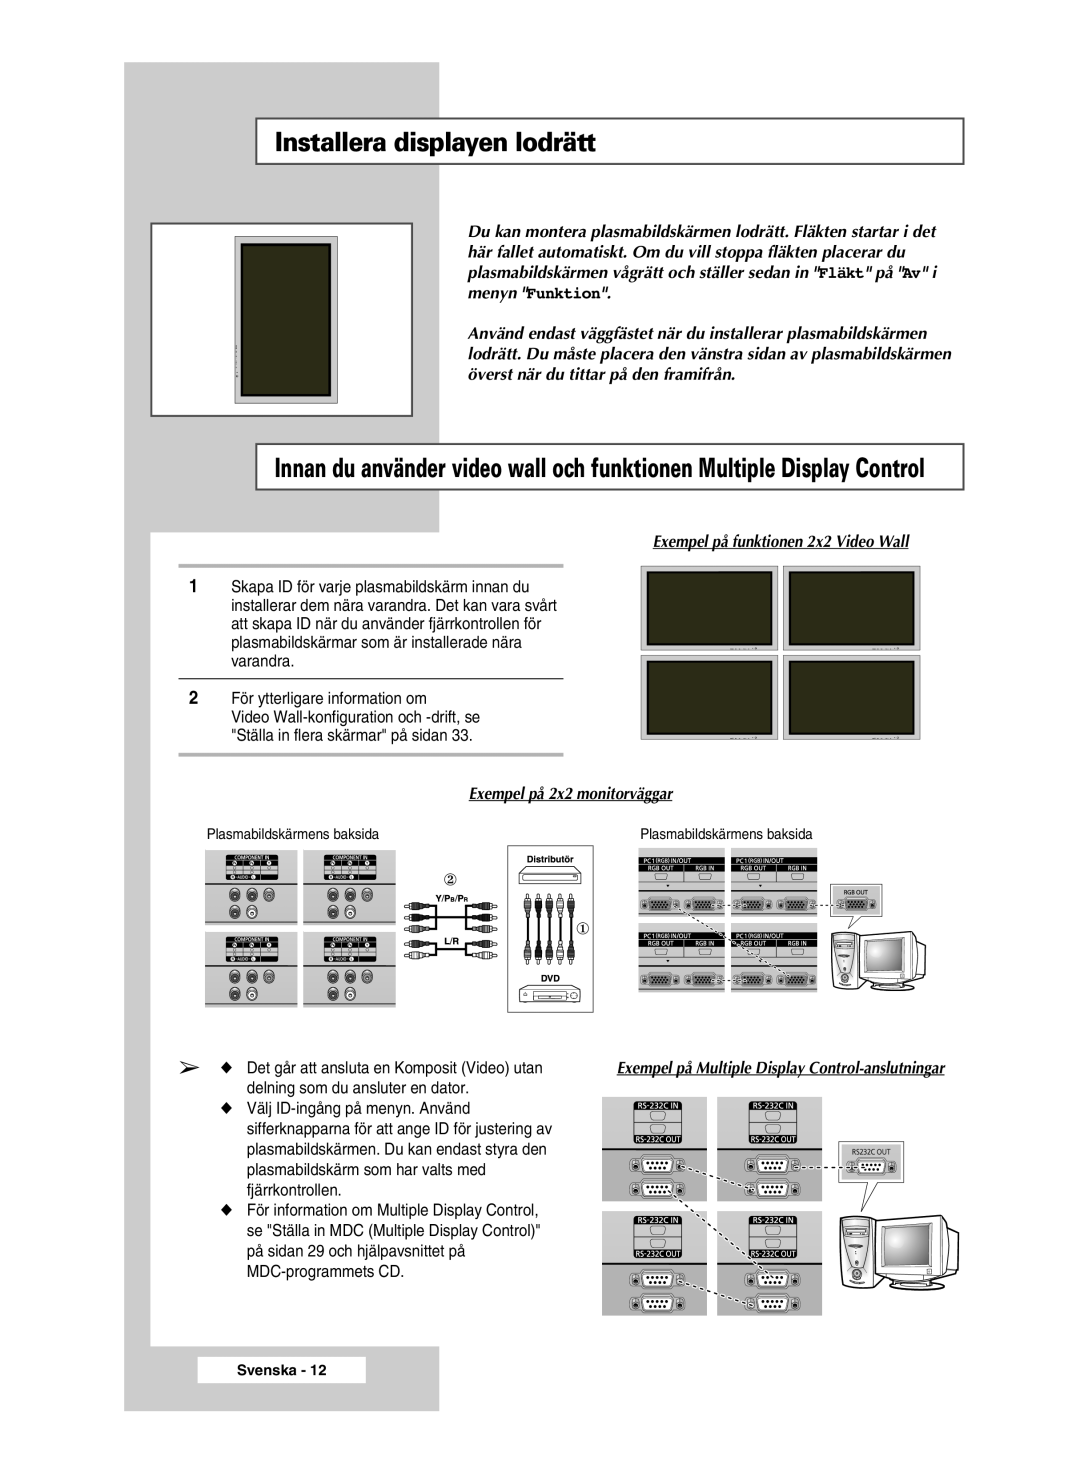 Samsung PPM42M5SSX/EDC Installera displayen lodrätt, Exempel på funktionen 2x2 Video Wall, Exempel på 2x2 monitorväggar 